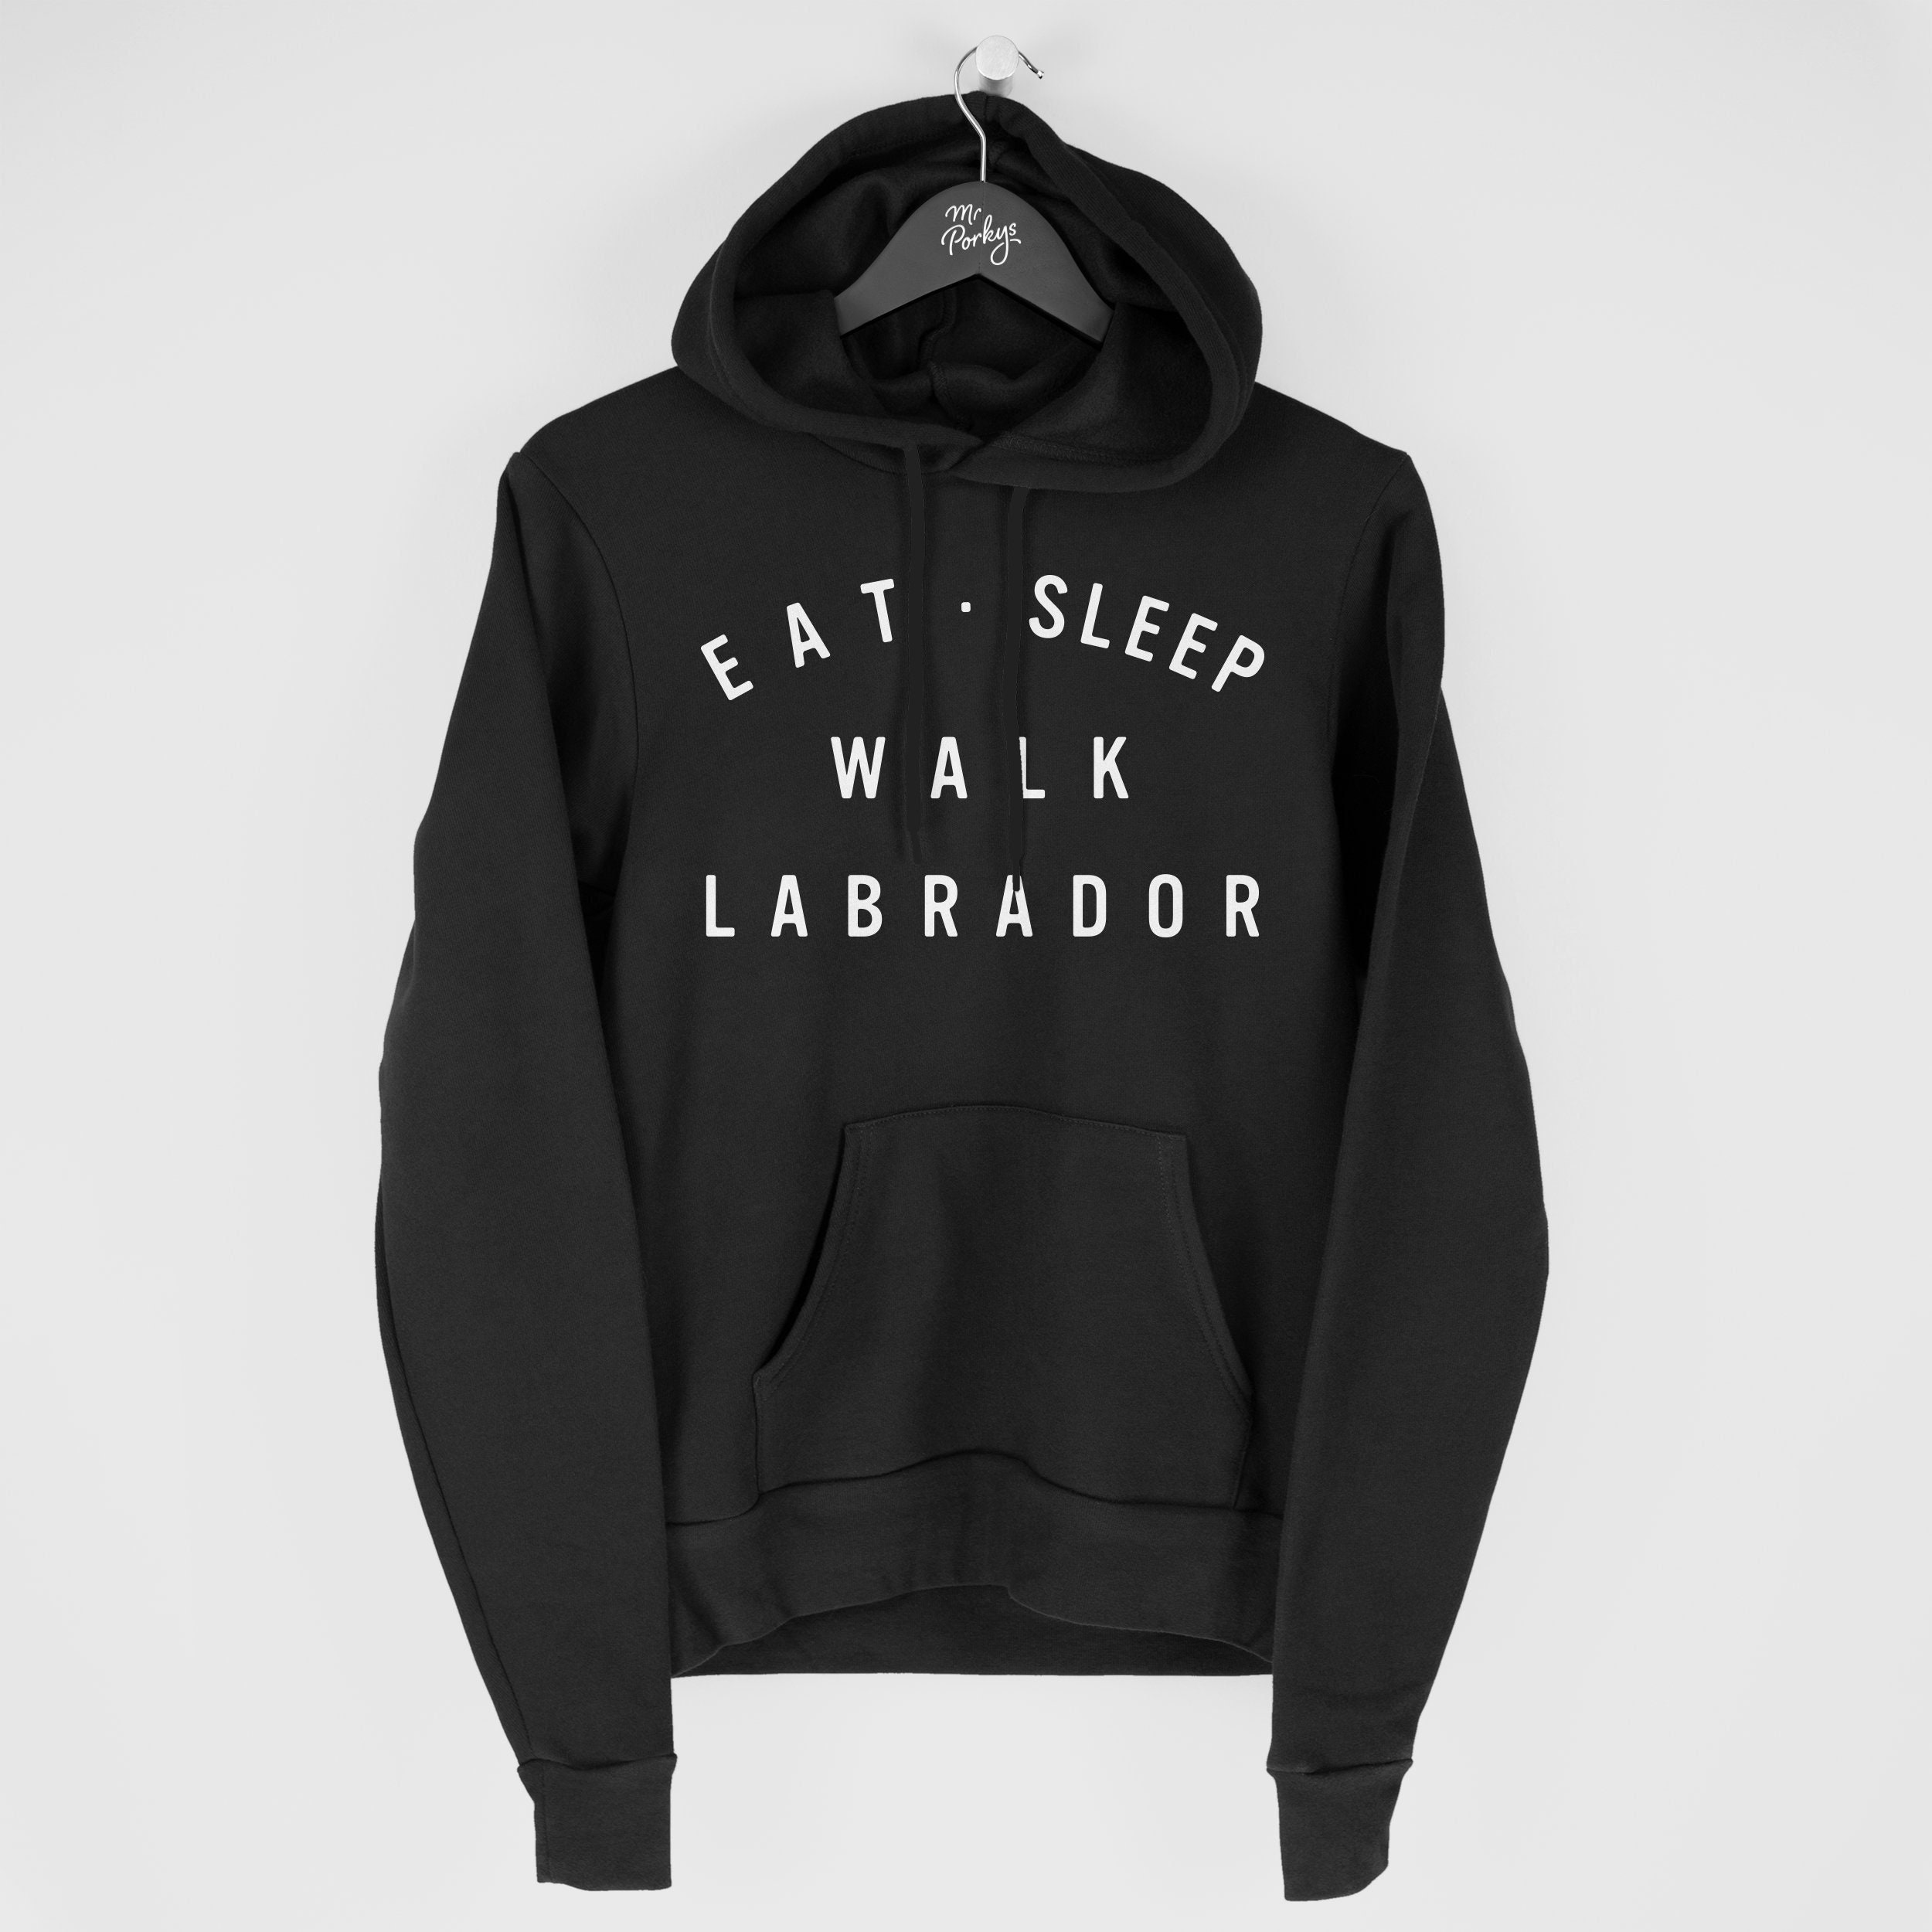 Labrador Hoodie, Eat Sleep Walk Gift For Owner, Hoody